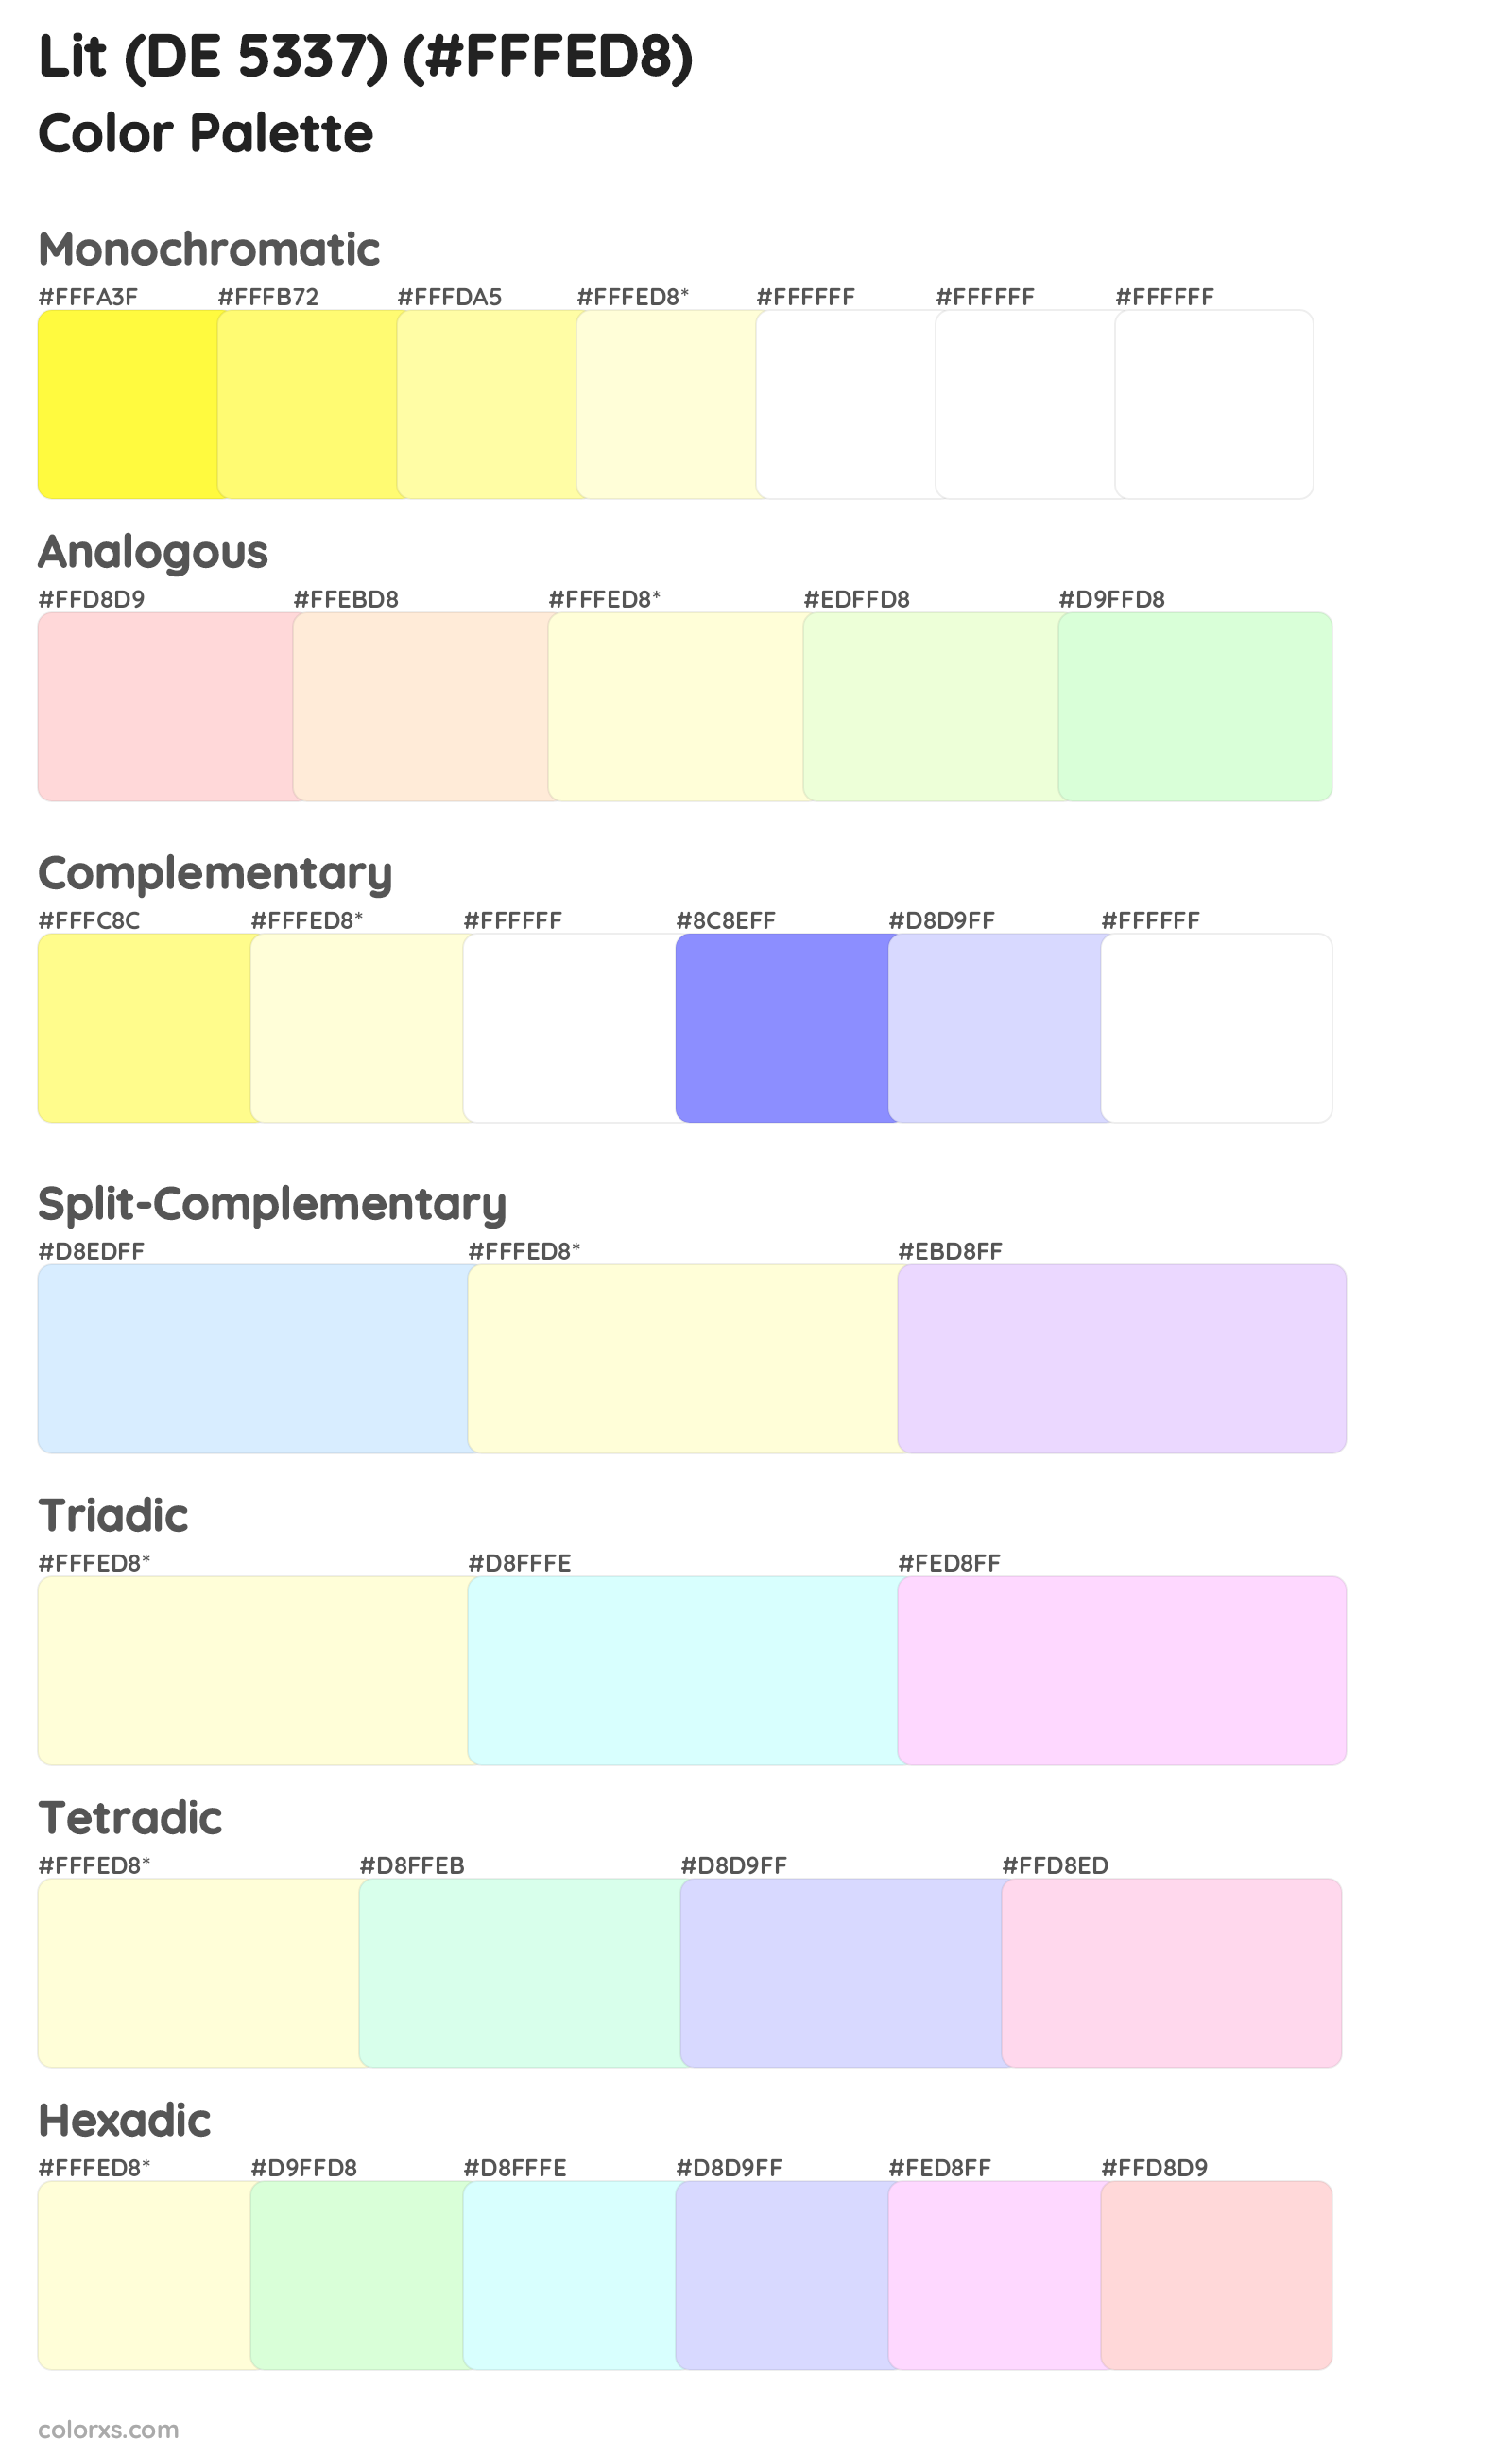 Lit (DE 5337) Color Scheme Palettes